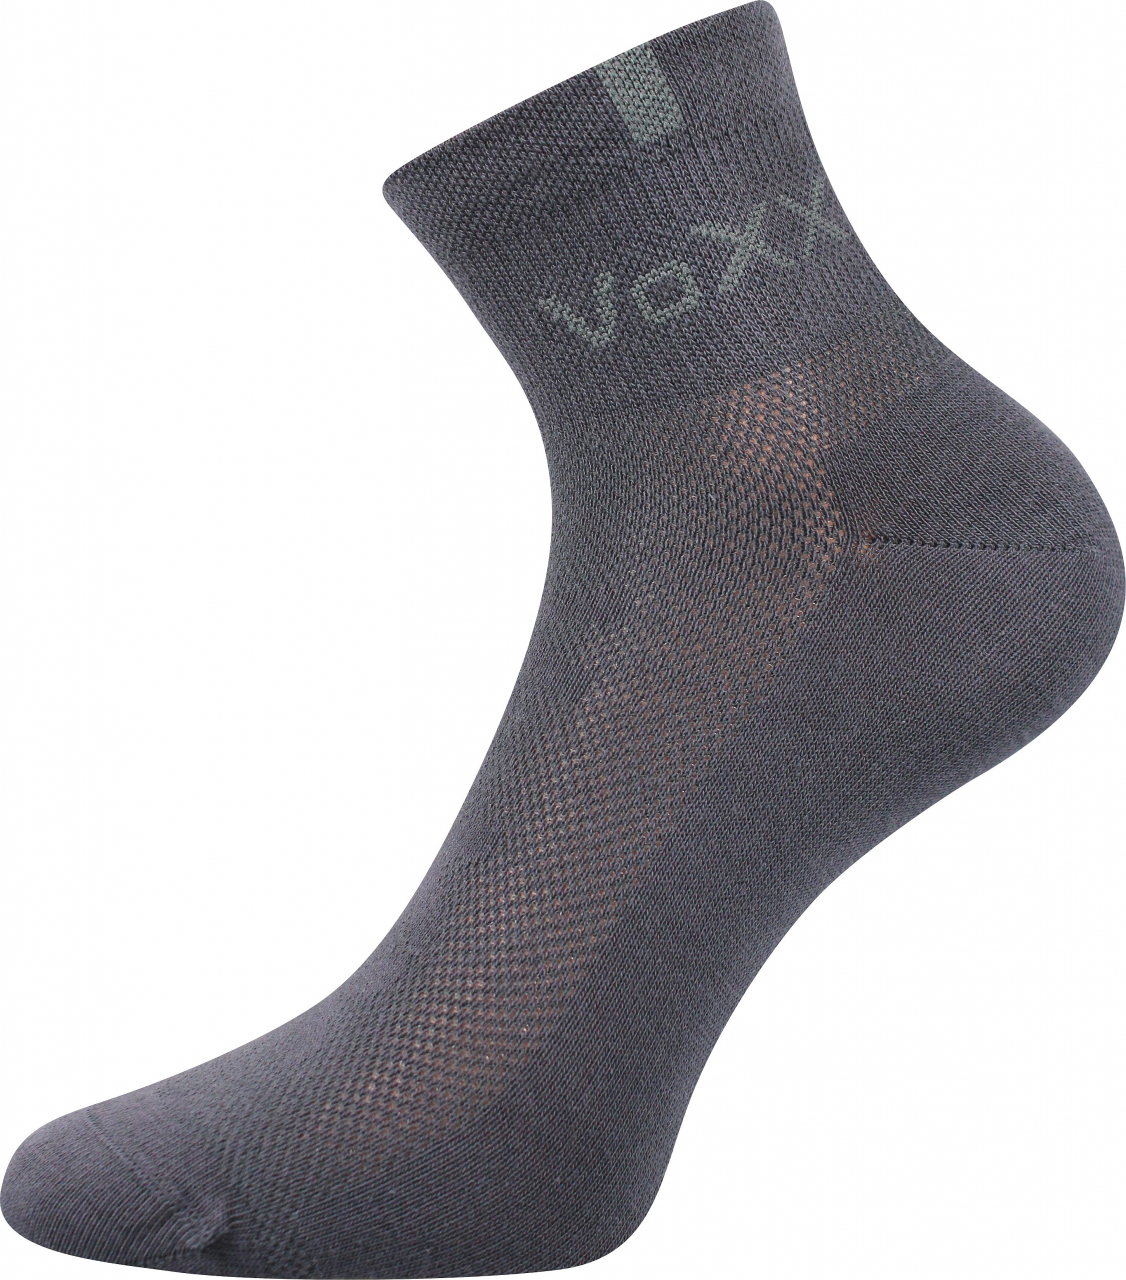 Ponožky s elastanem Voxx Fredy - tmavě šedé, 43-46